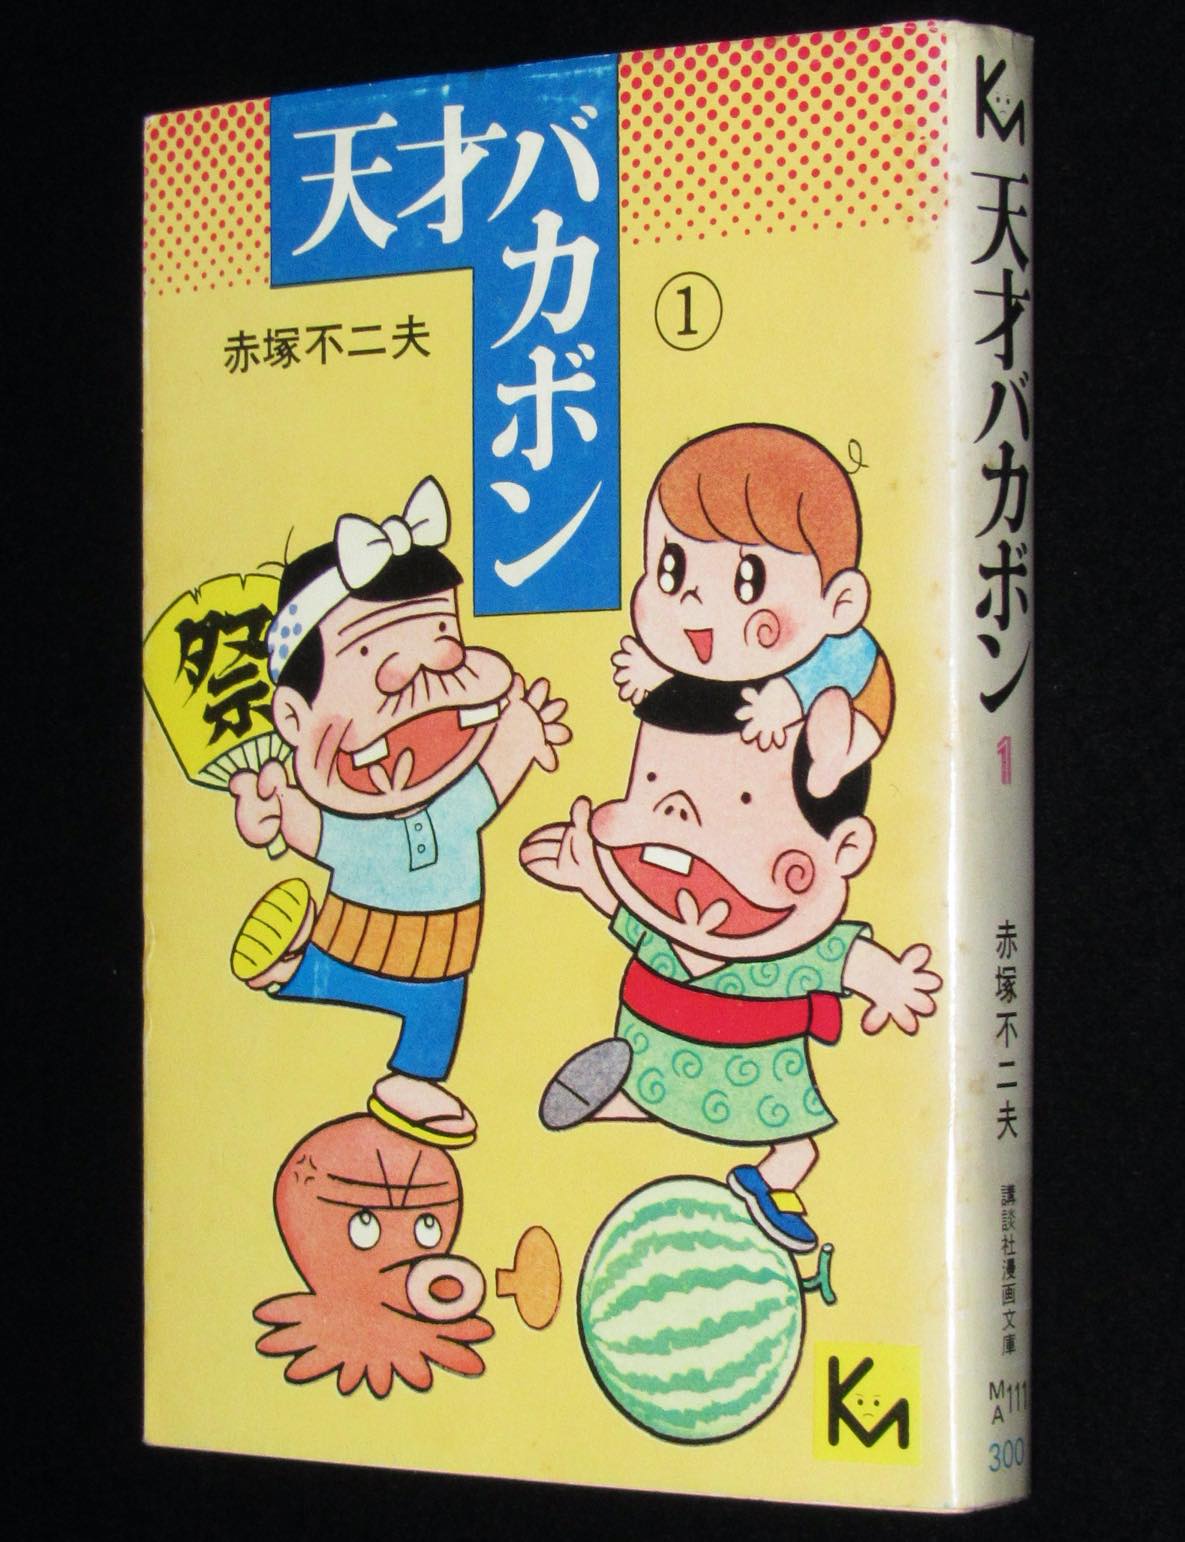 赤塚不二夫 天才バカボン 1 講談社漫画文庫 1977年9月初版 絶版漫画専門 じゃんくまうす